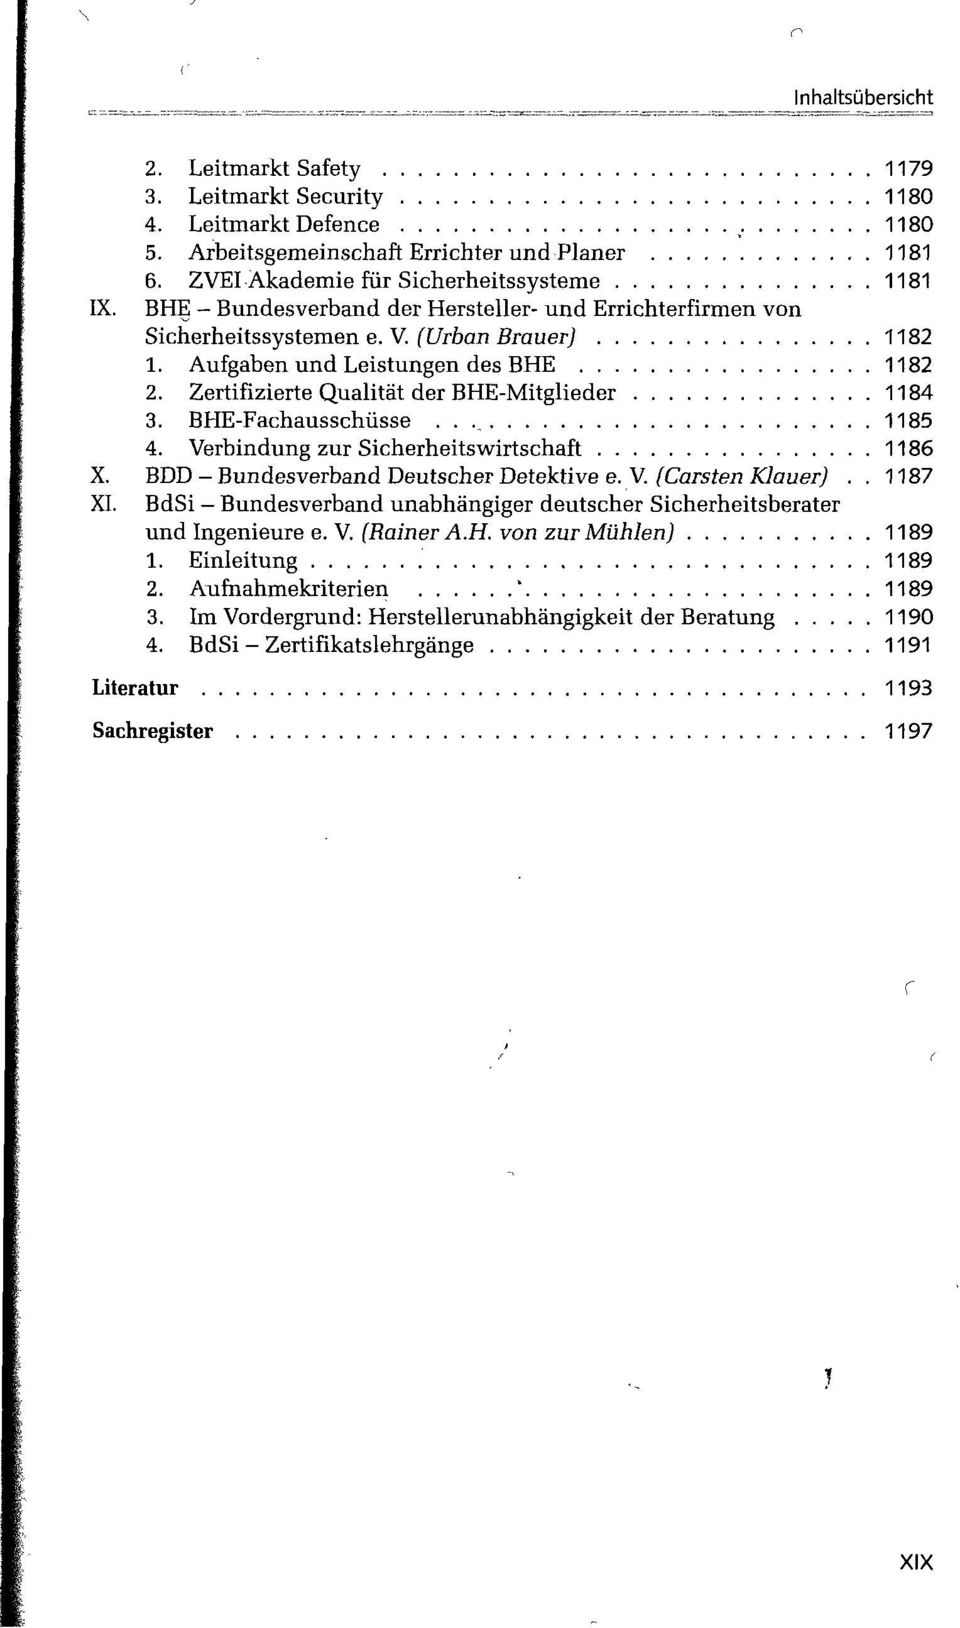 BHE-Fachausschüsse 1185 4. Verbindung zur Sicherheitswirtschaft 1186 X. BDD - Bundesverband Deutscher Detektive e. V. (Carsten Klauer).